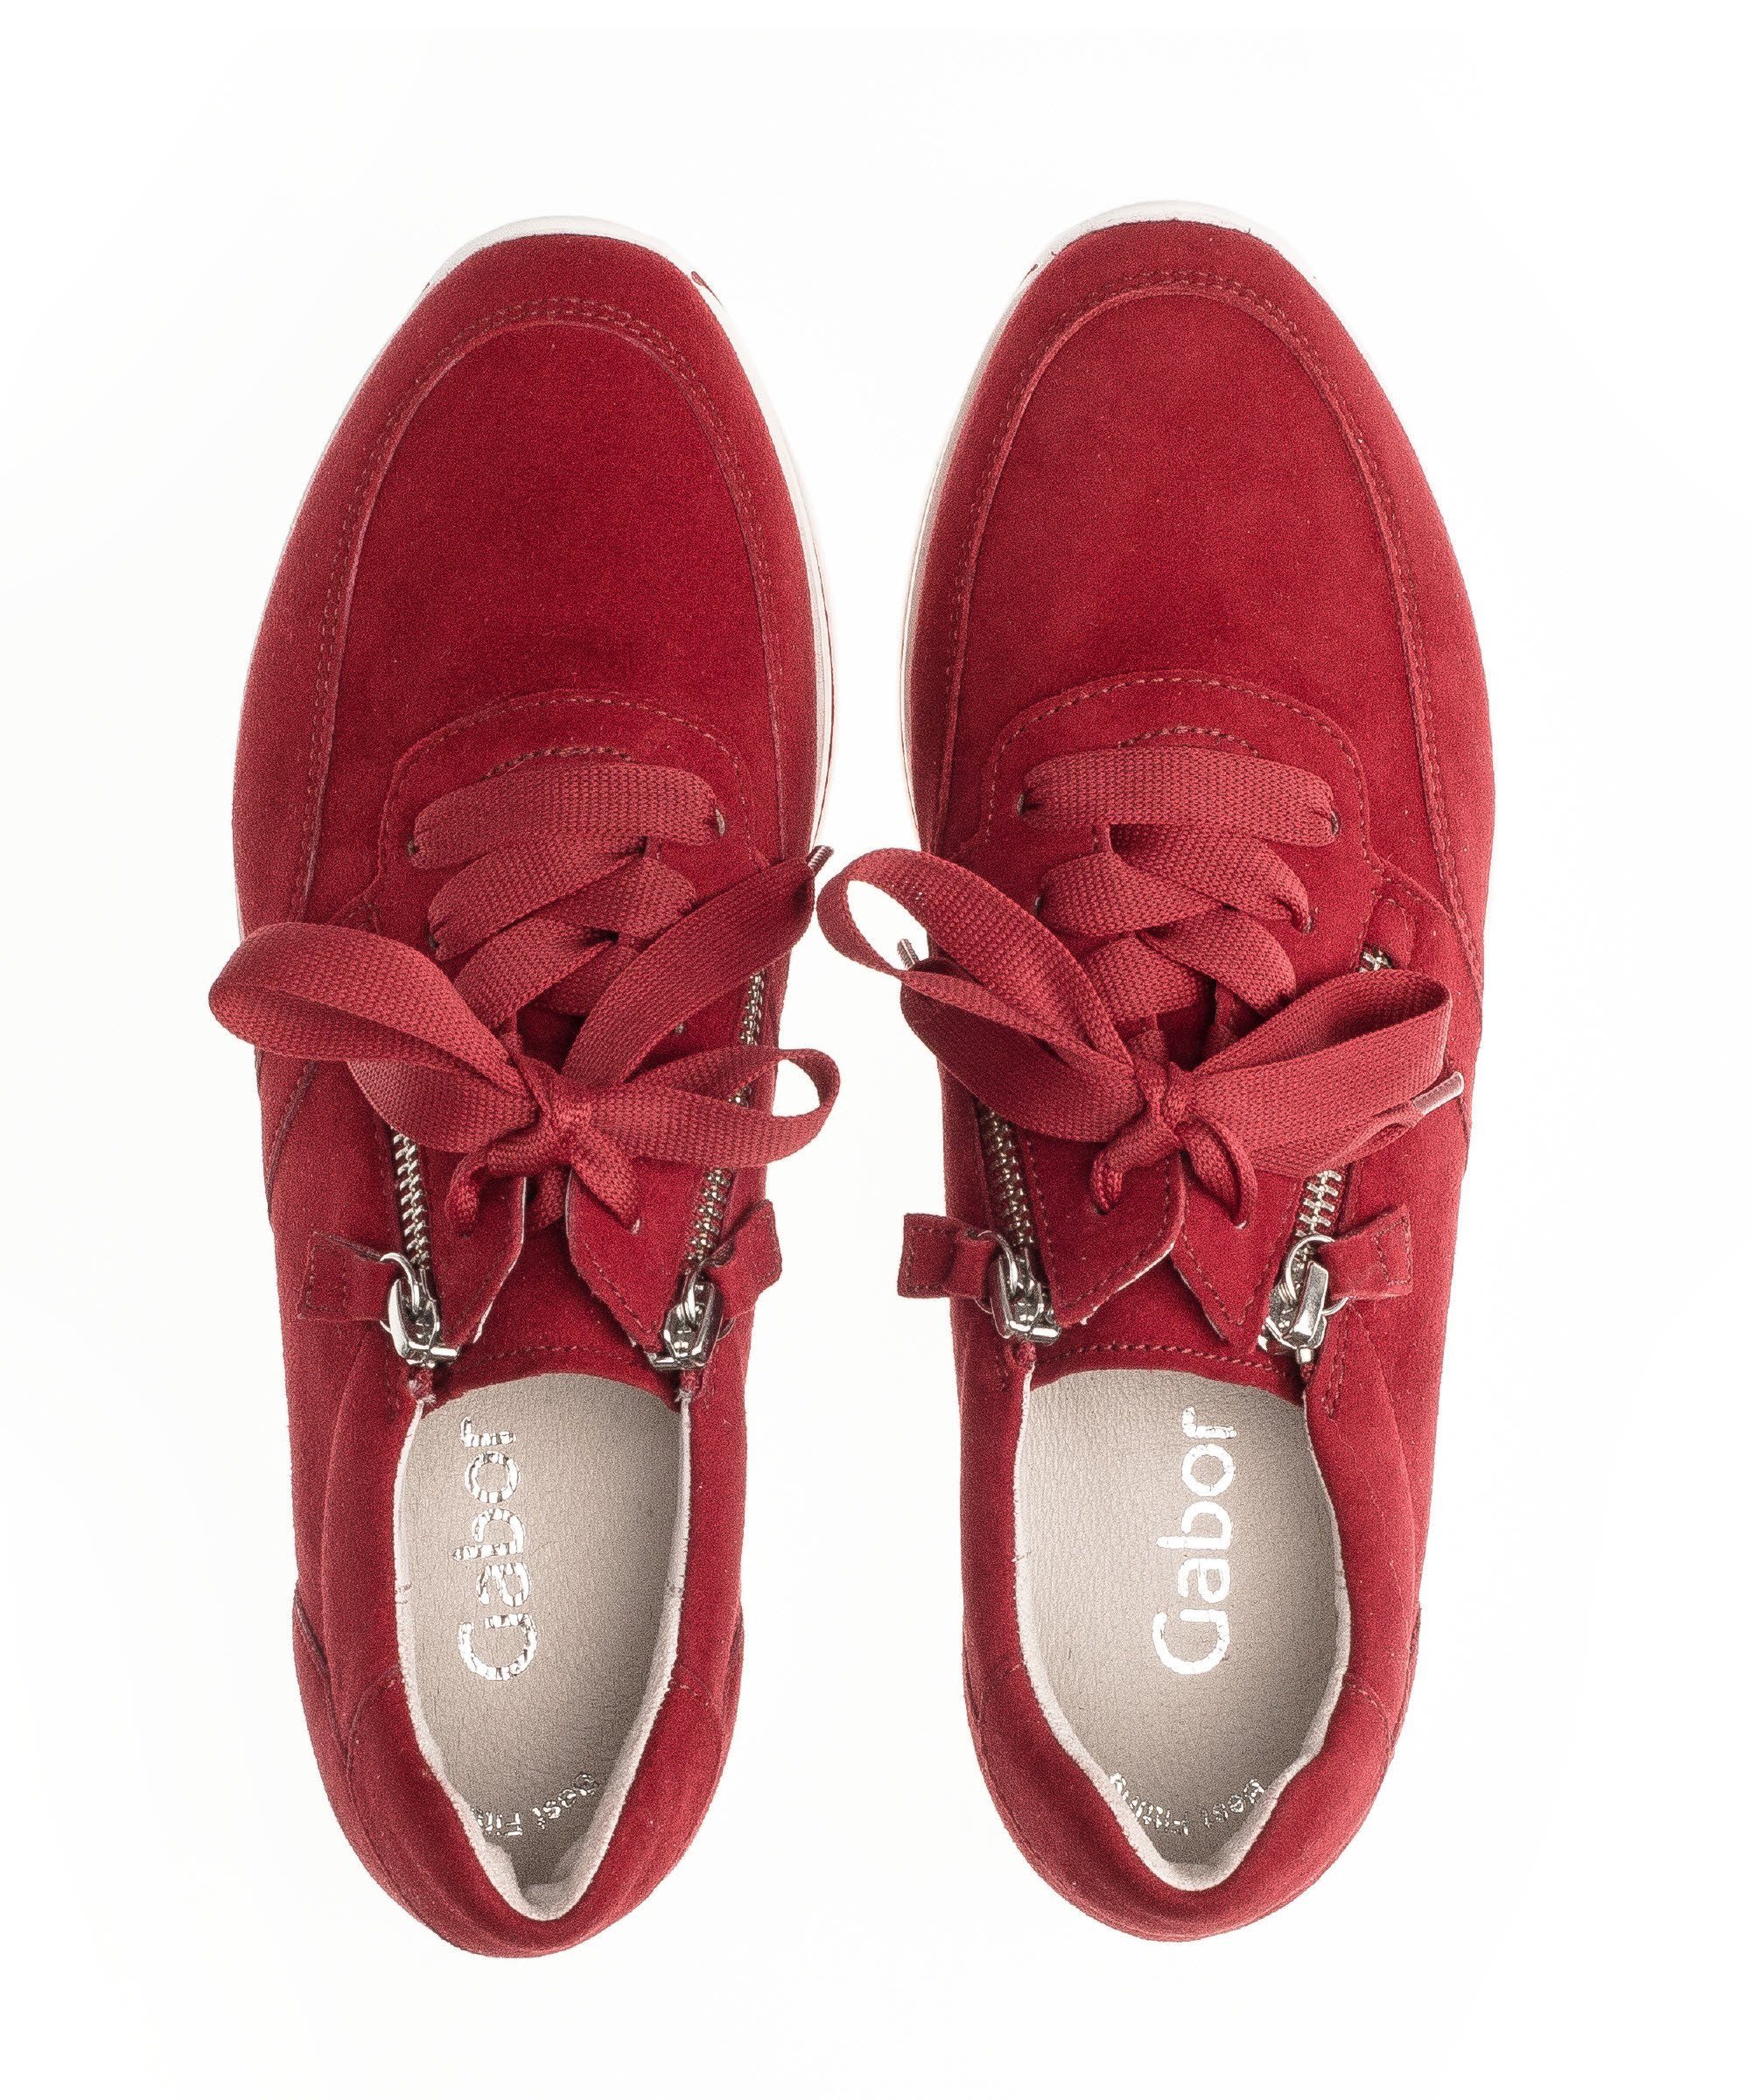 / 83.410.15 15) Sneaker Gabor Rot (rubin